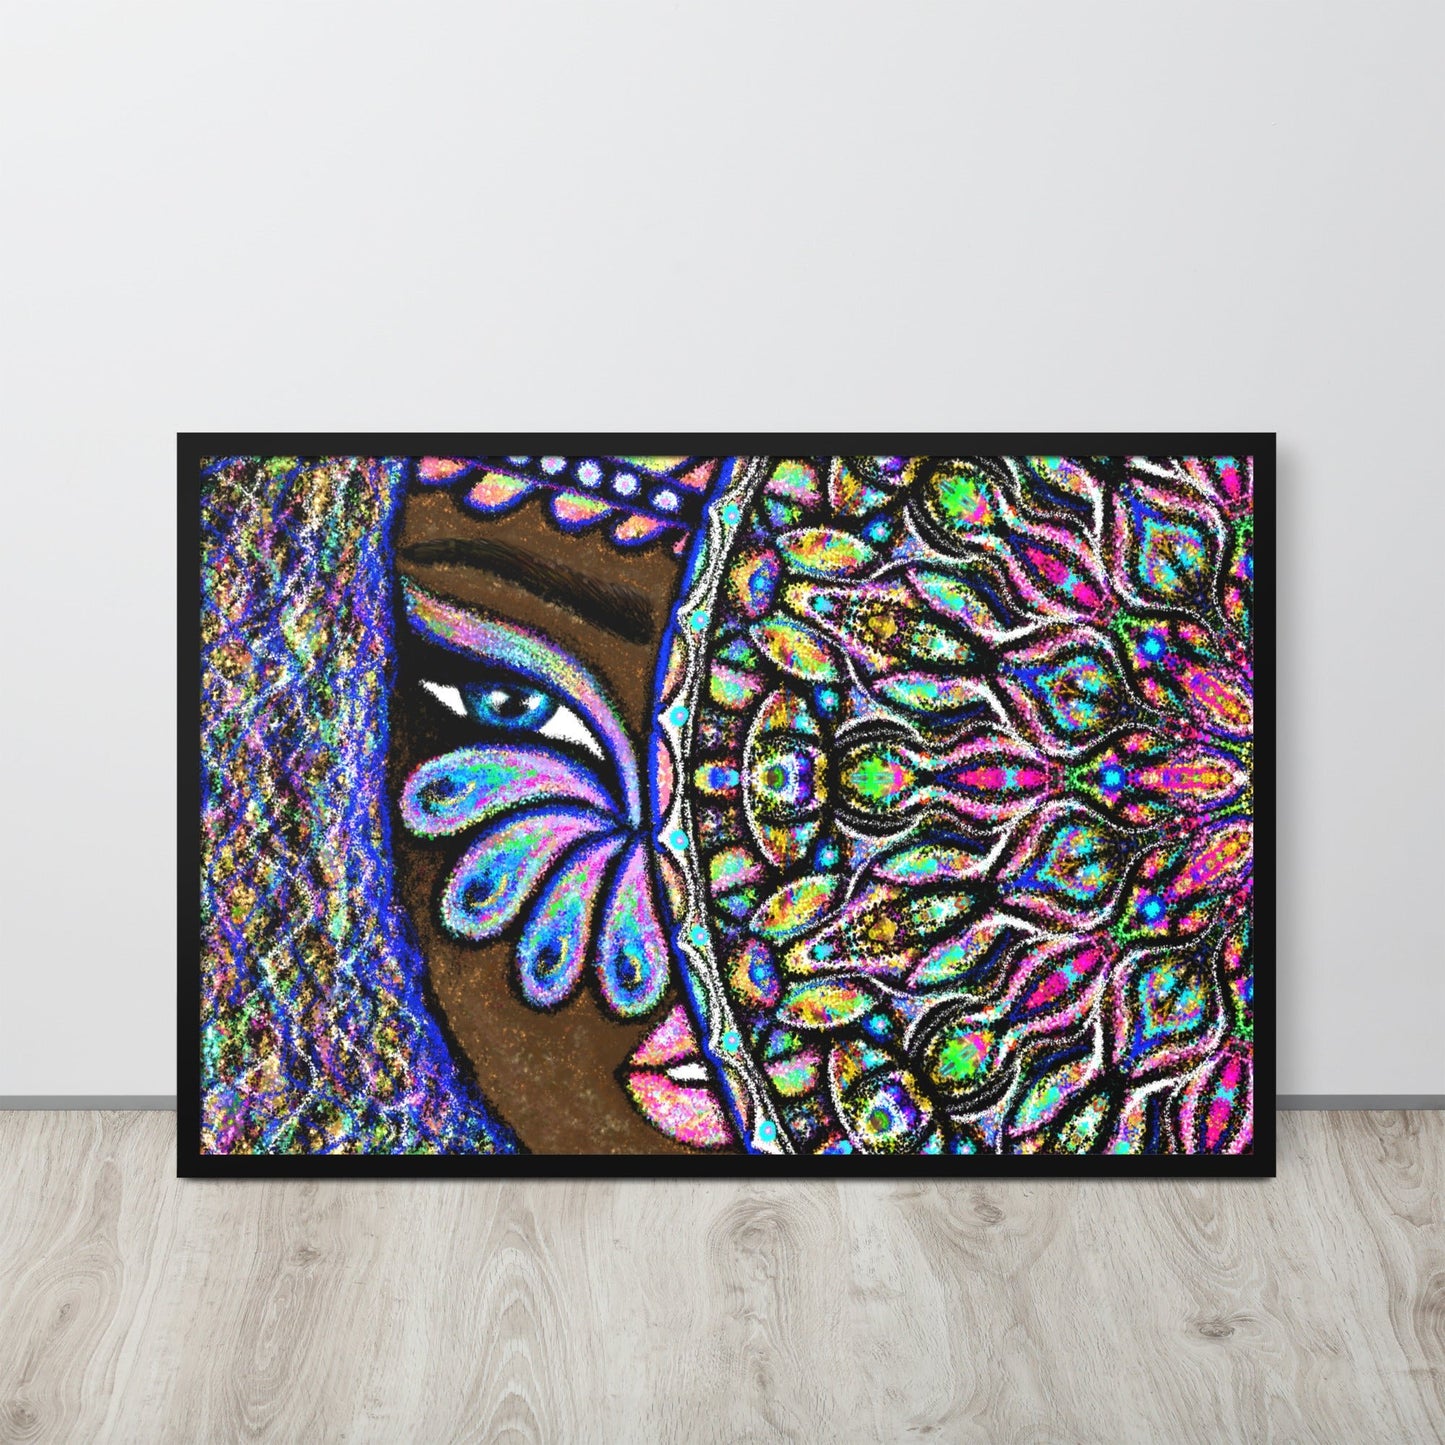 wall-art-framed-poster-peacock-eyes-black